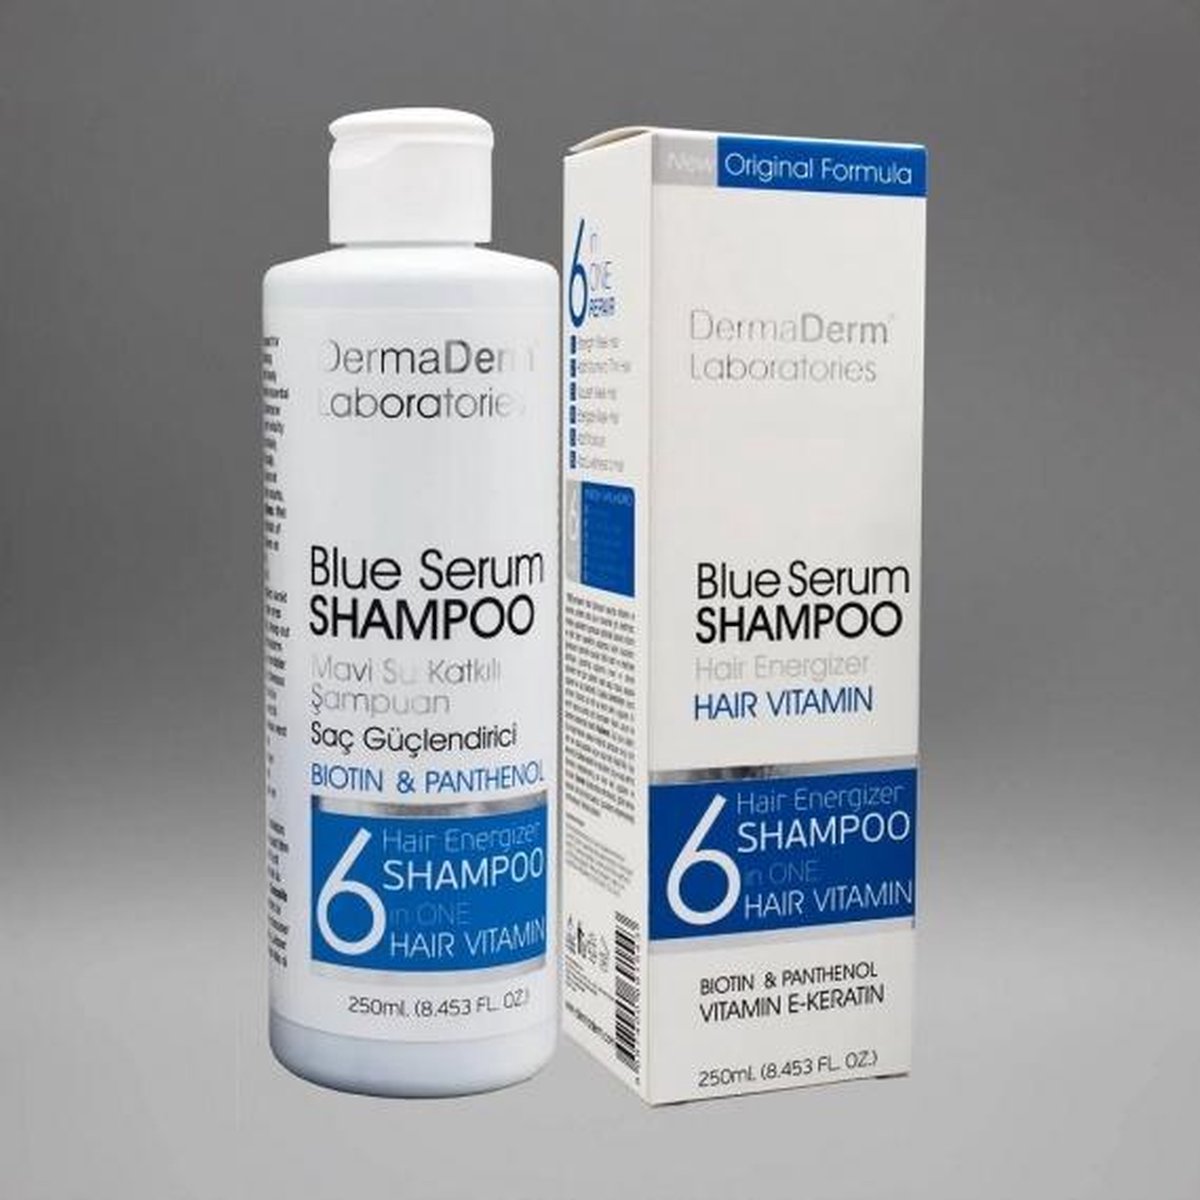 DermaDerm - Mavi Serum Shampoo